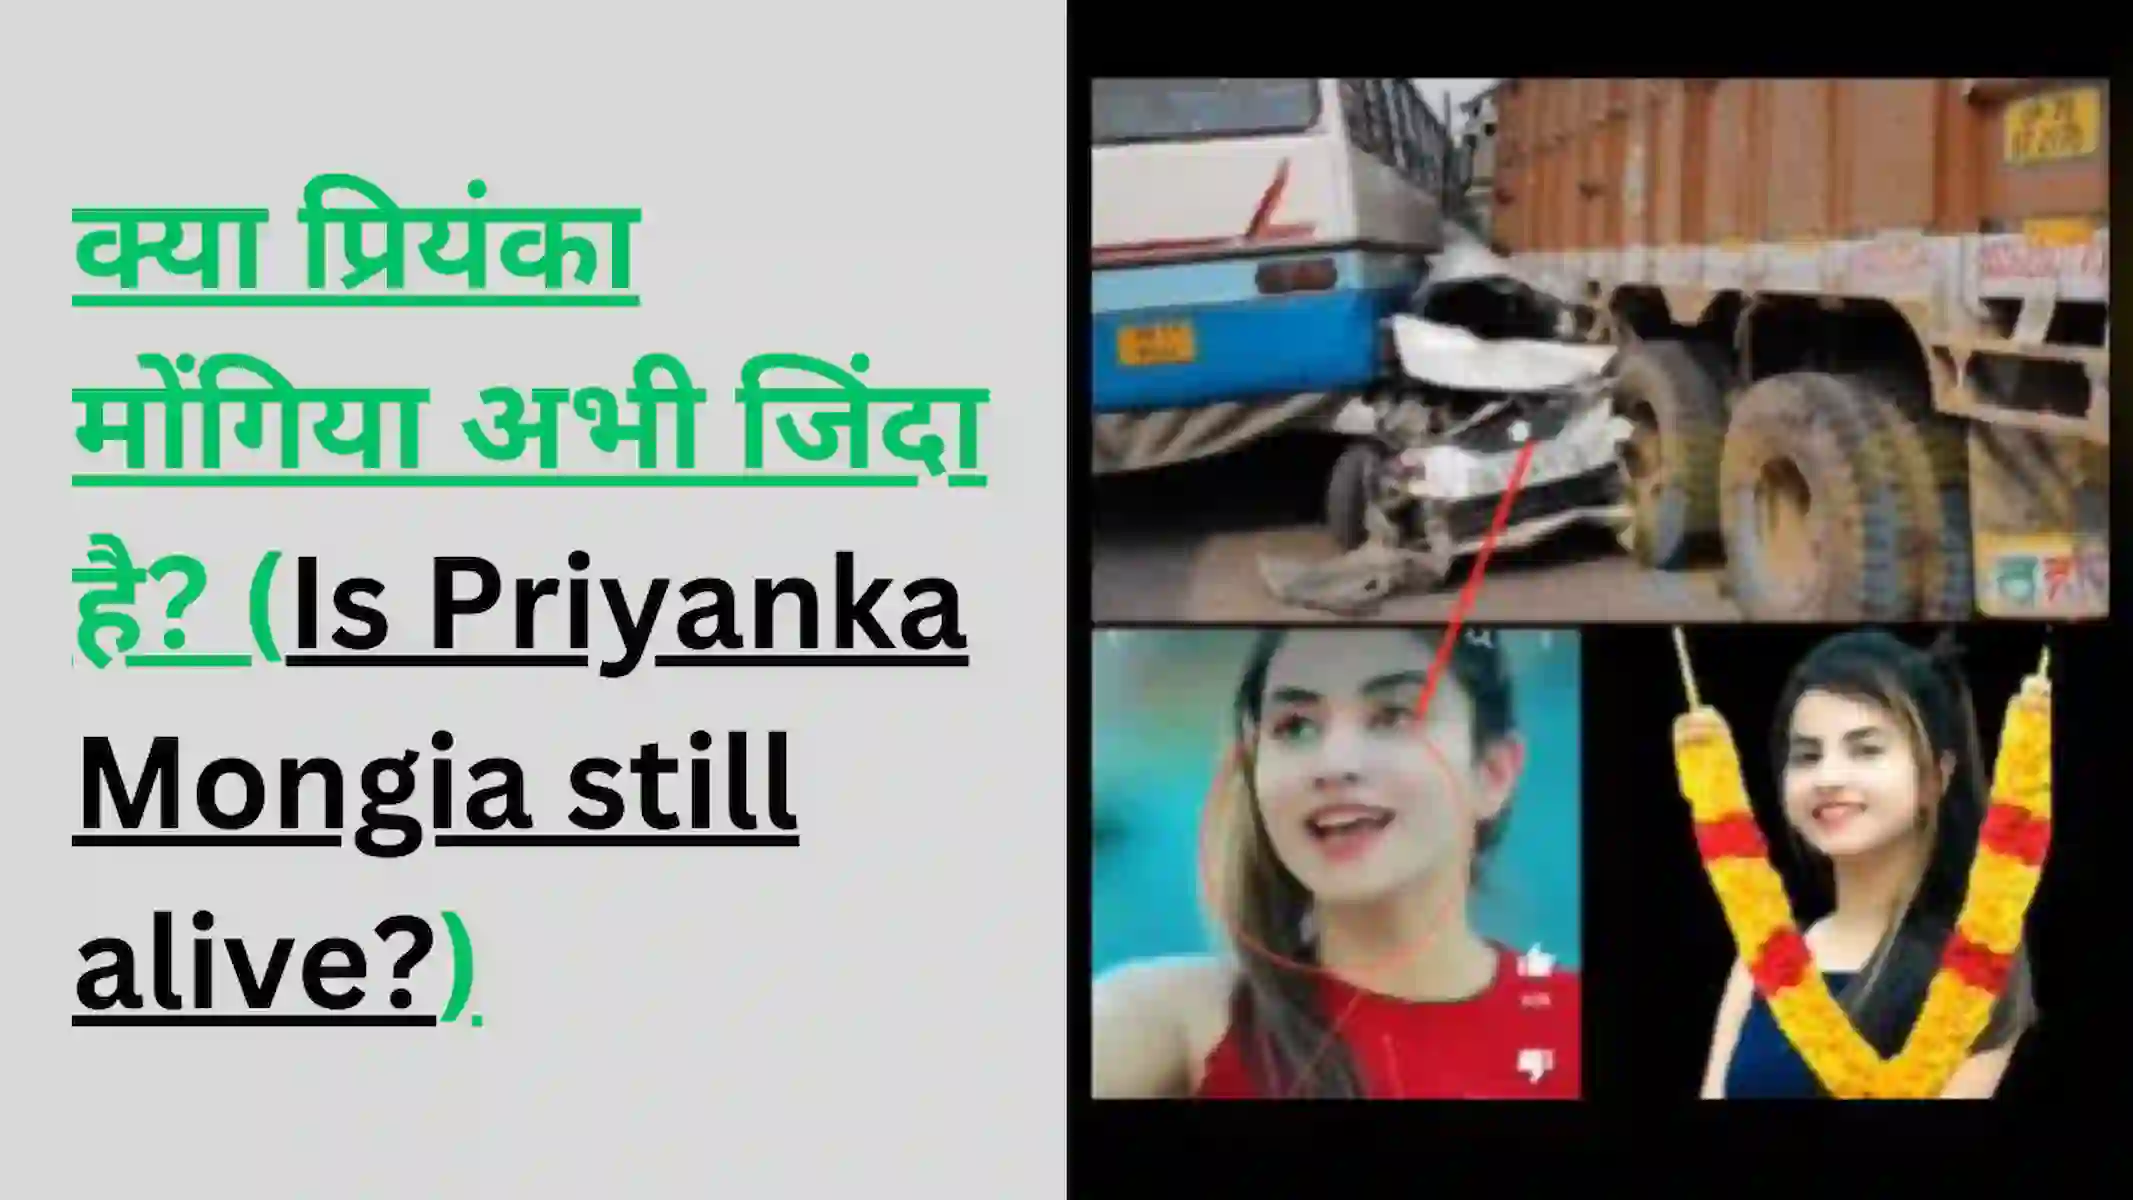 क्या प्रियंका मोंगिया अभी जिंदा है? (Is Priyanka Mongia still alive?)